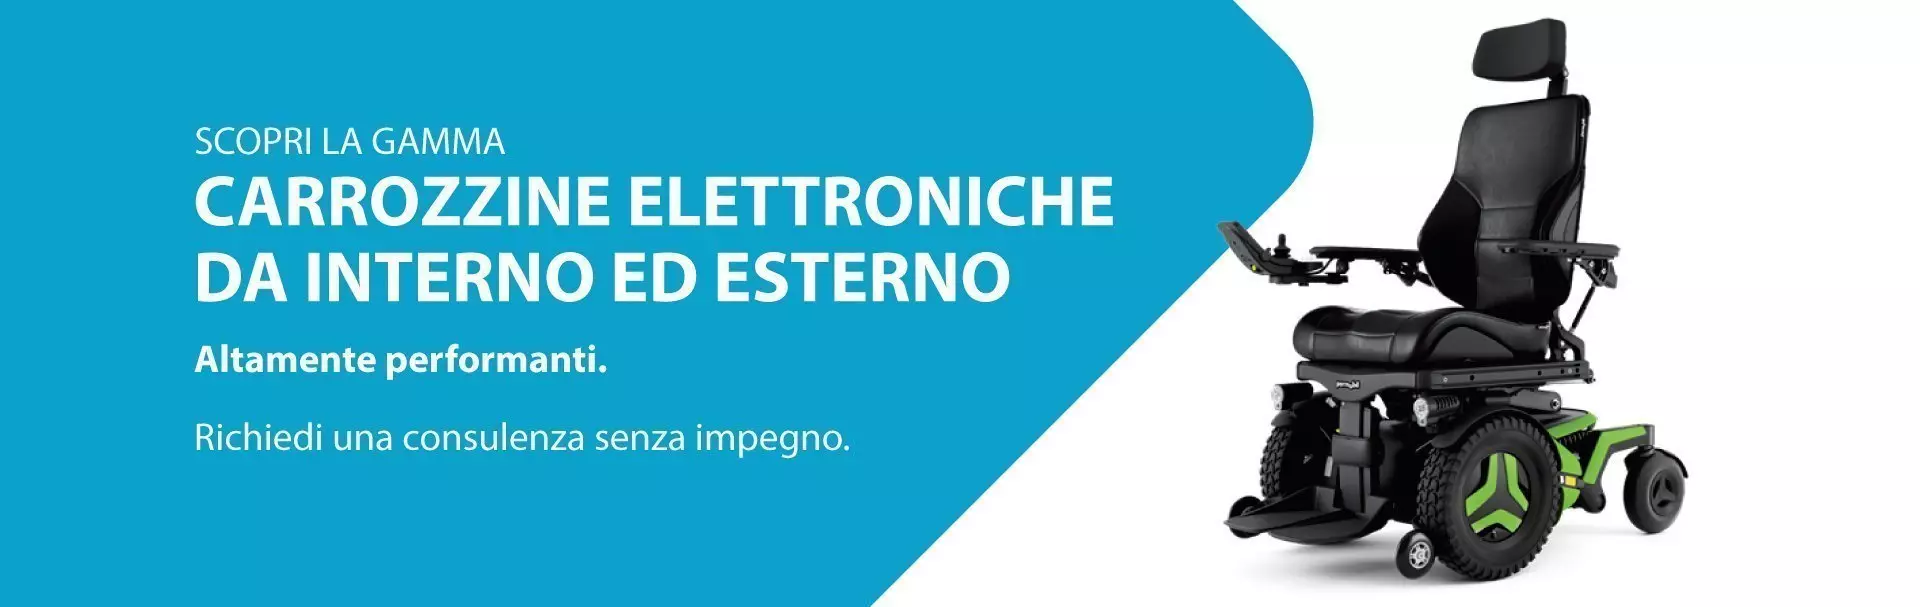 Carrozzine elettroniche Permobil Verona Trento